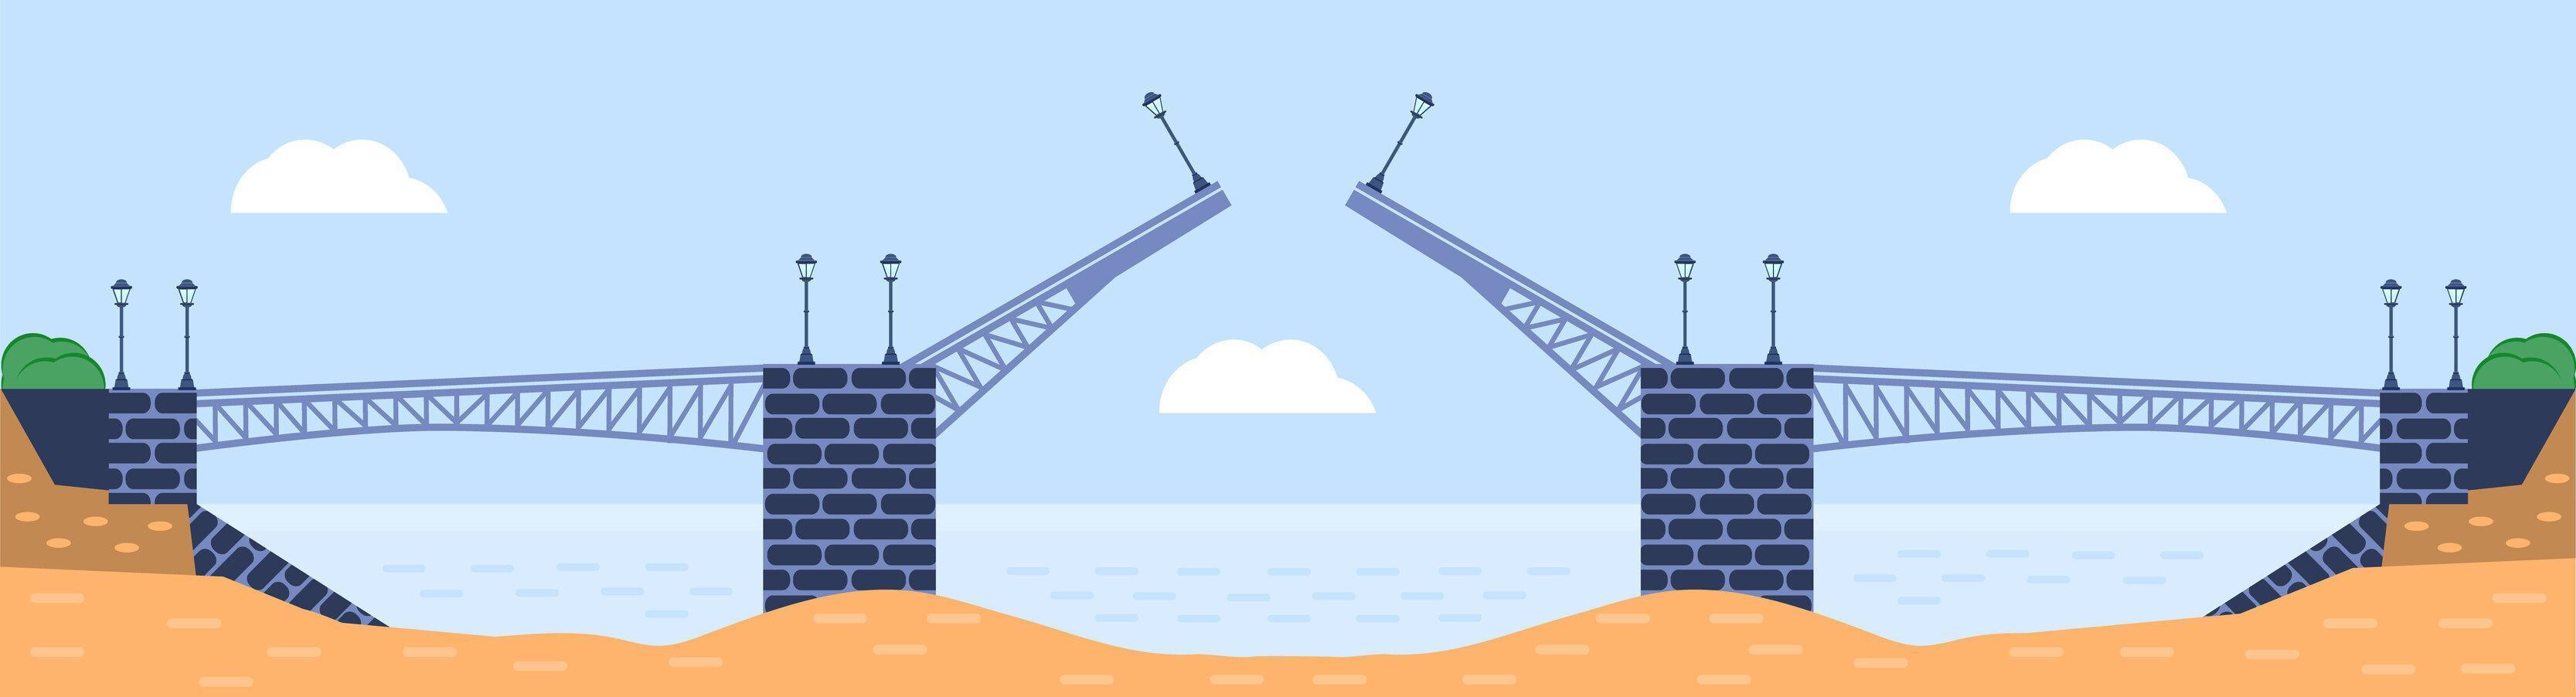 illustration vectorielle de pont. élément d'architecture de la ville avec câbles, autoroute et construction de ponts sur la rivière avec chaussée isolée et lanternes sur un paysage coloré vecteur